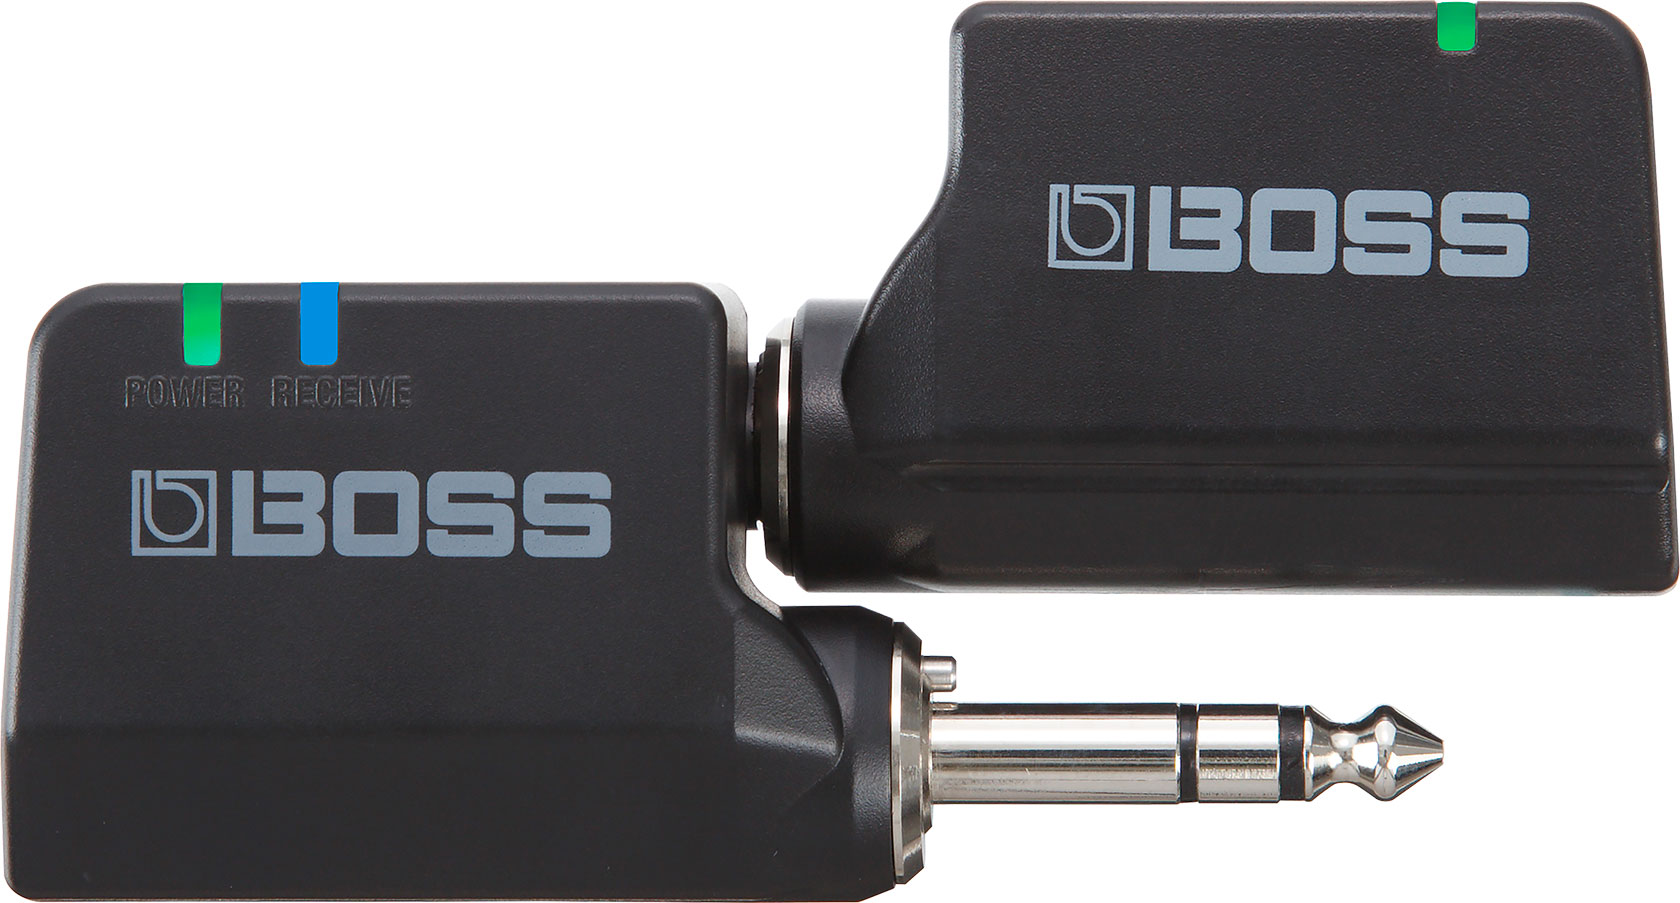 BOSS - WL-20/WL-20L | Wireless System